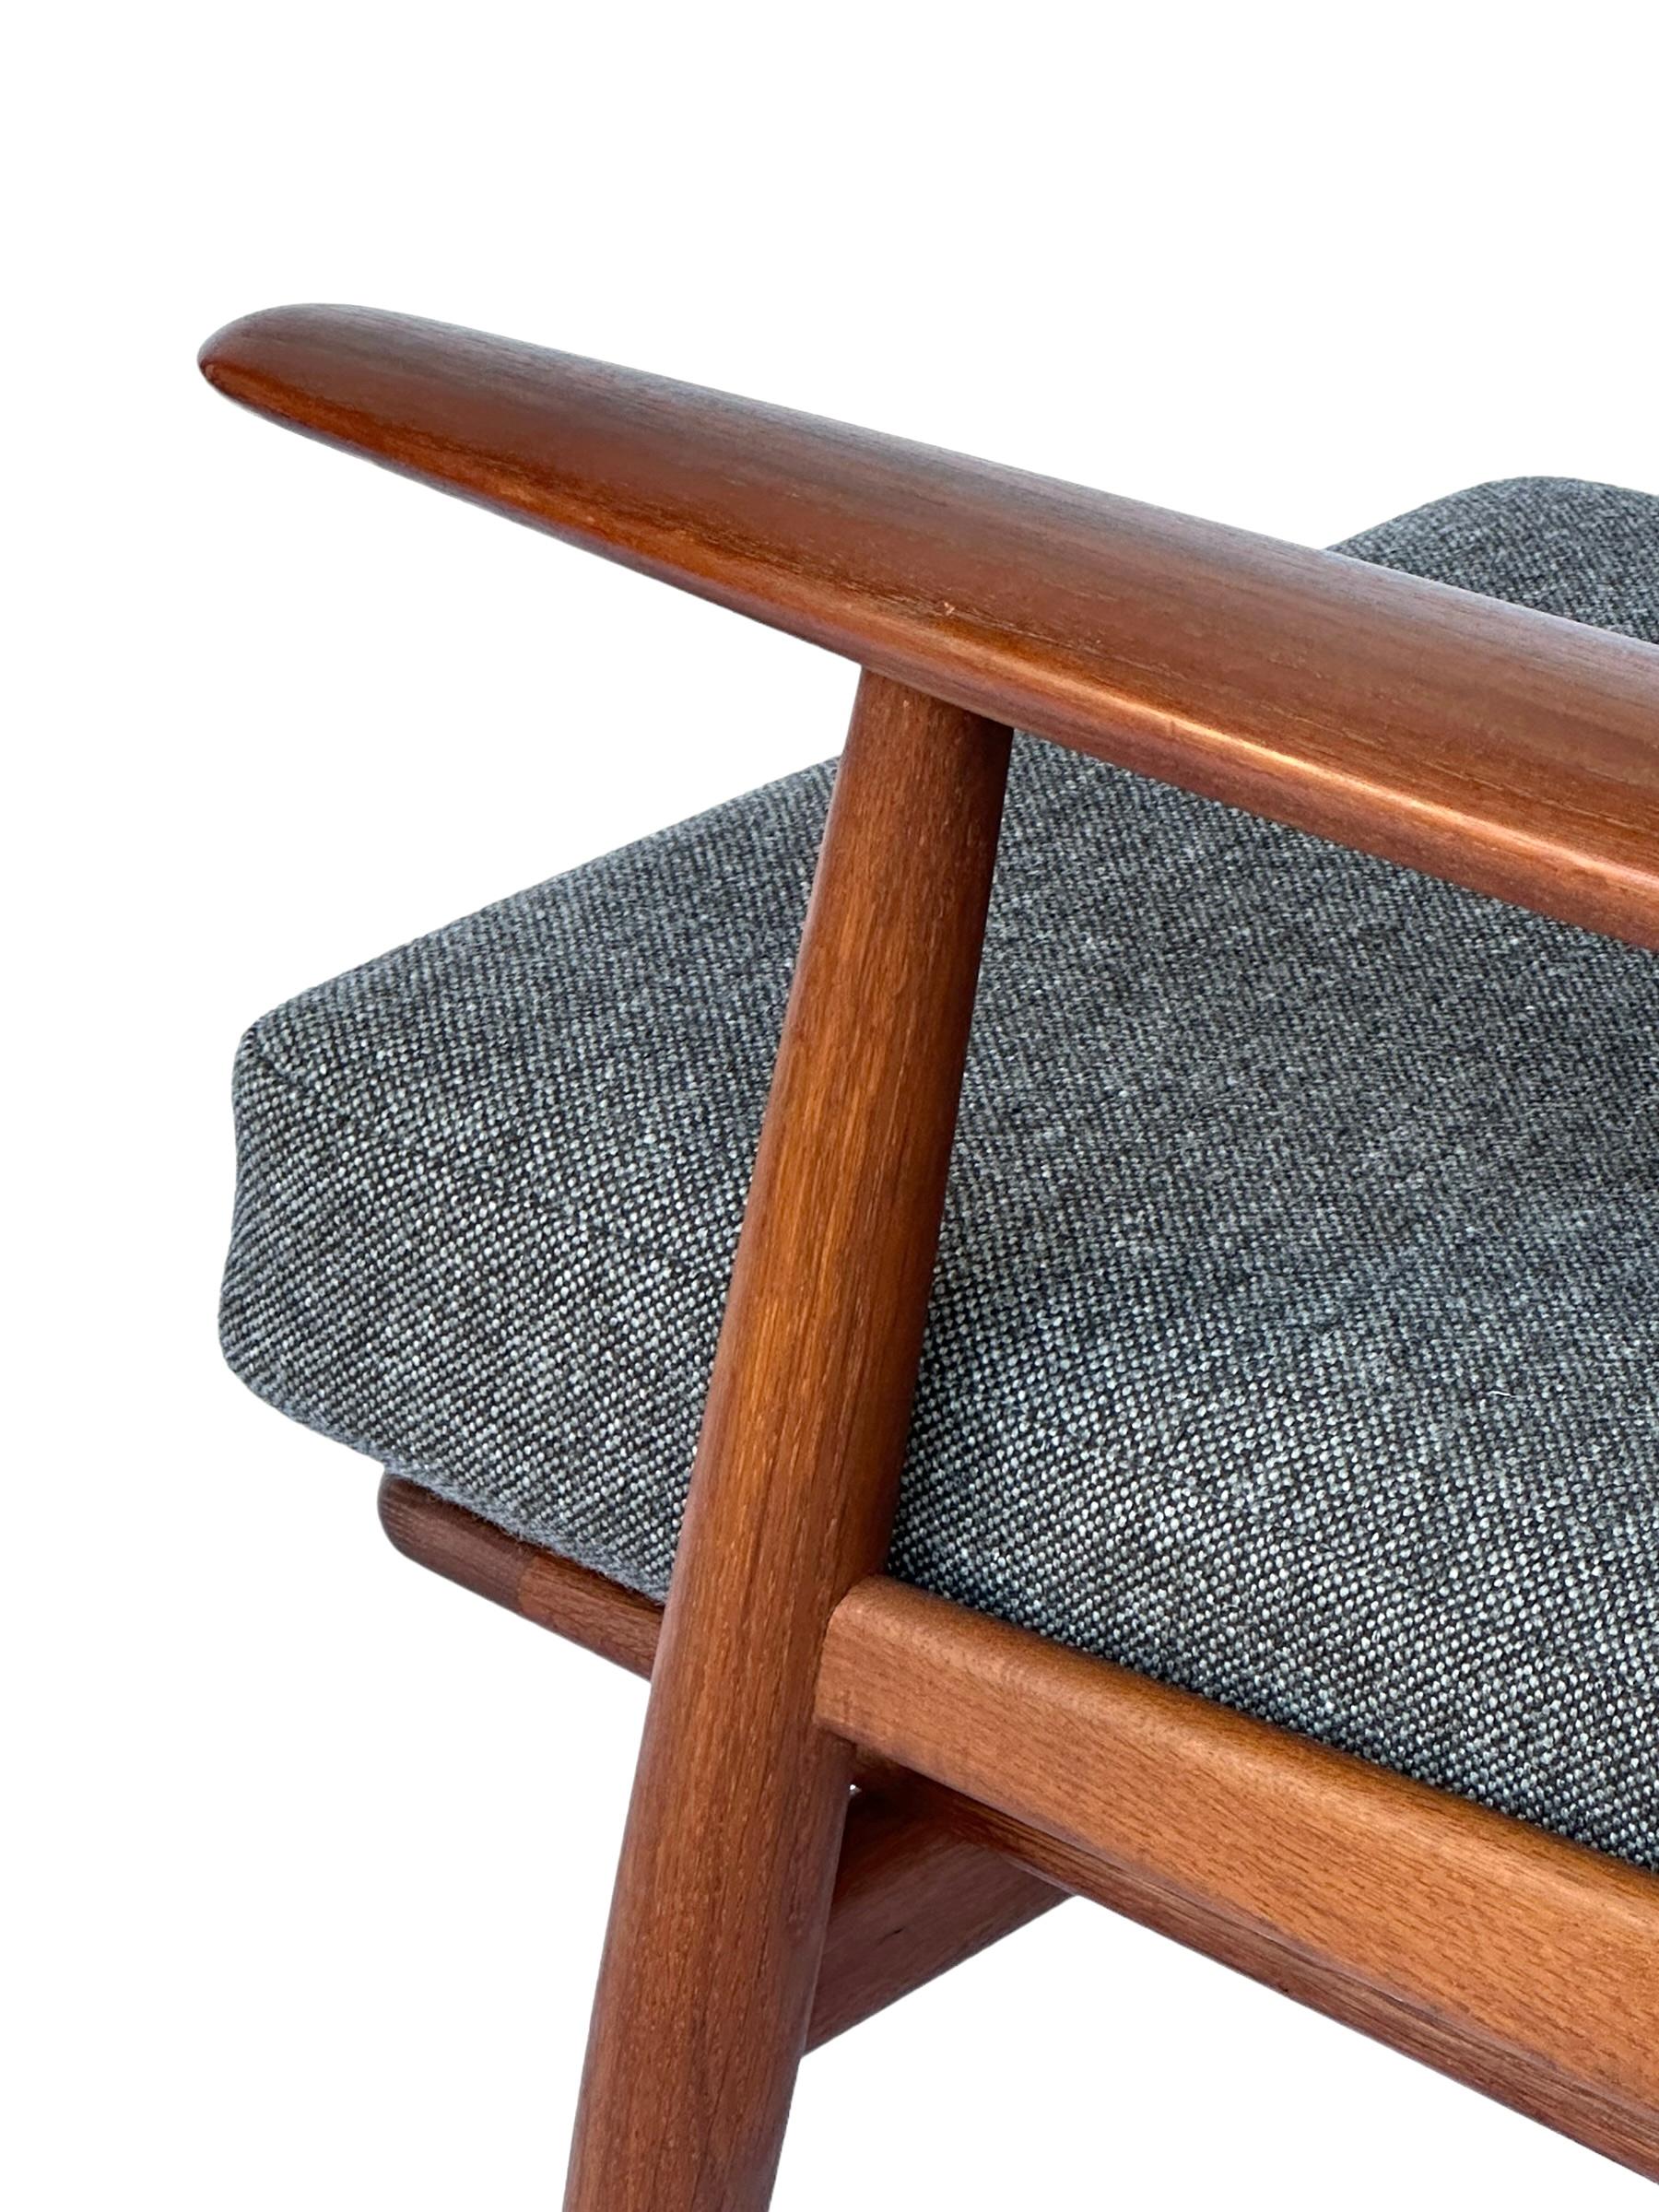 Hans J. Wegner Cigar Lounge Chair in Teak with New Maharam Upholstery For Sale 11